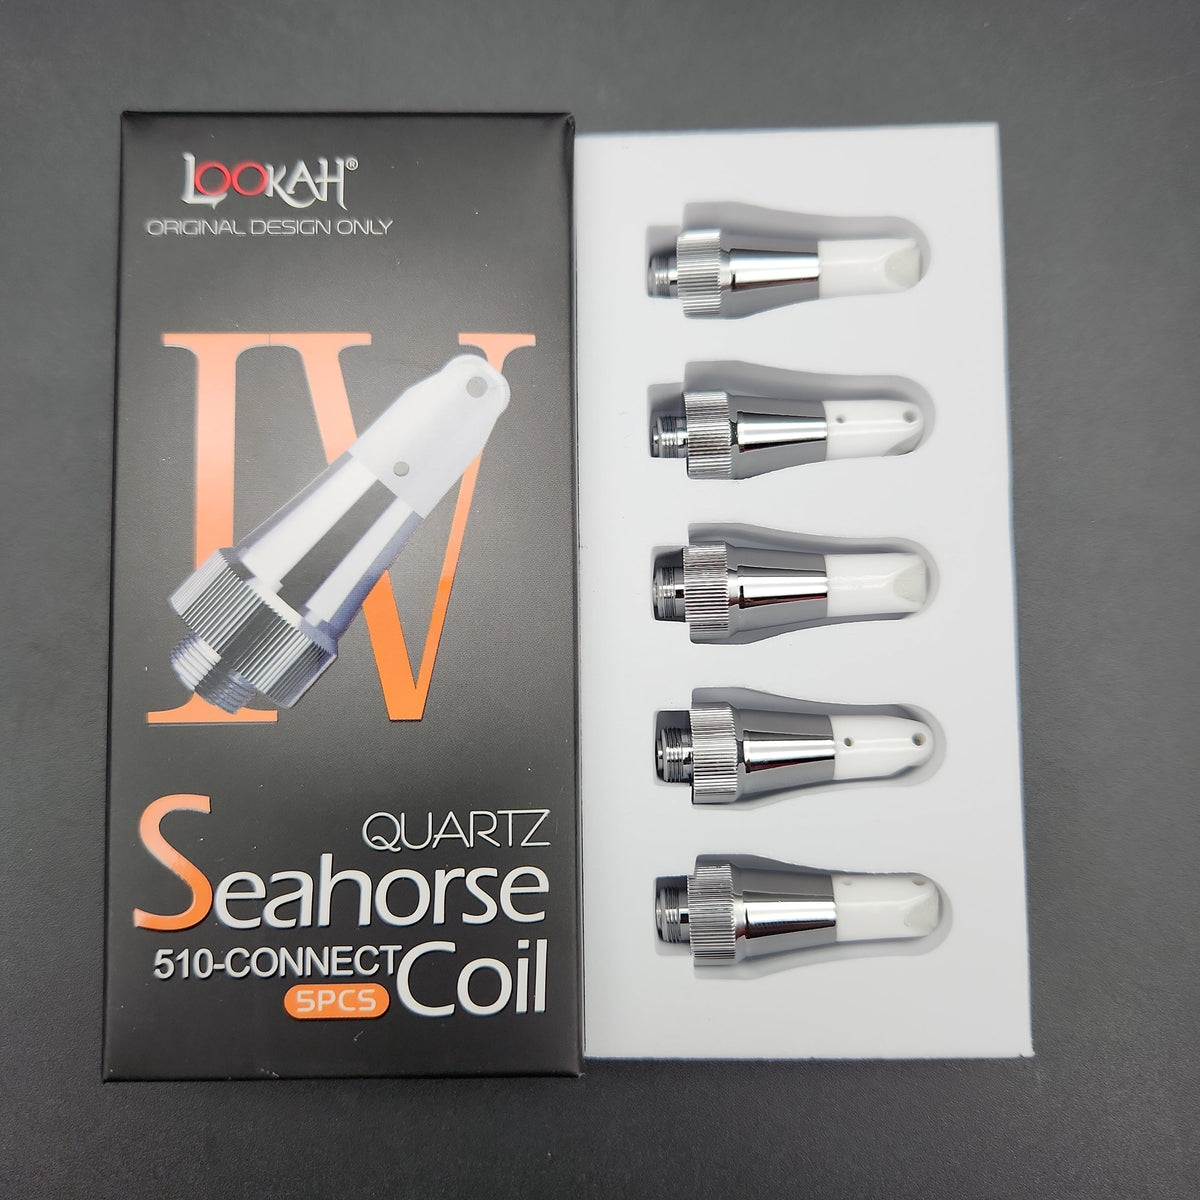 Quartz Tips for Lookah Seahorse Pro Quartz Replacement Ceramic Coils Tip  2.0 for lk Seahorse and